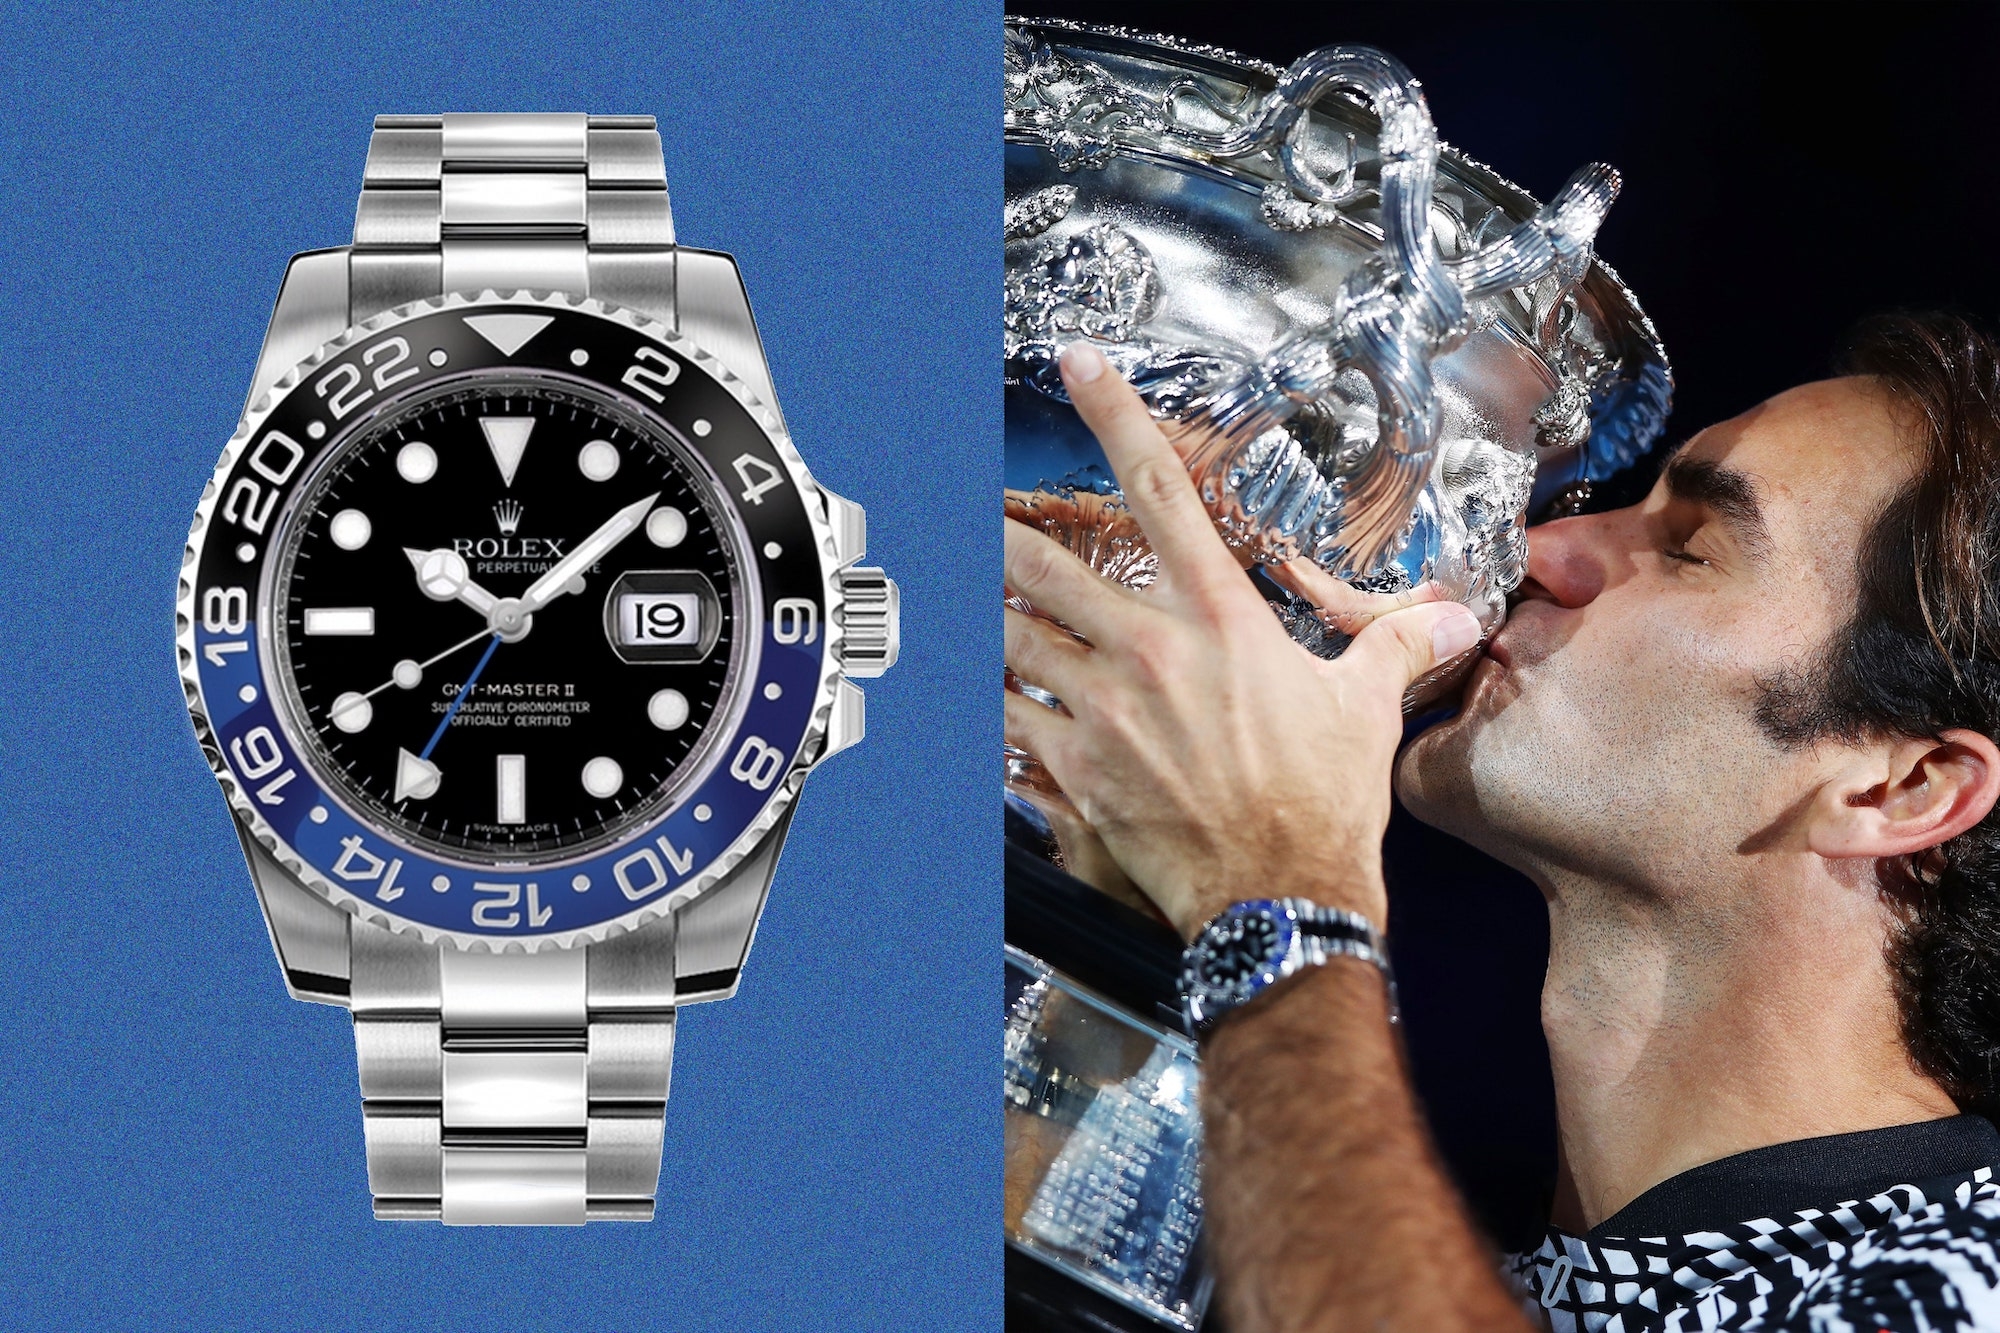 Tay vợt Roger Federer - Đồng hồ Rolex 